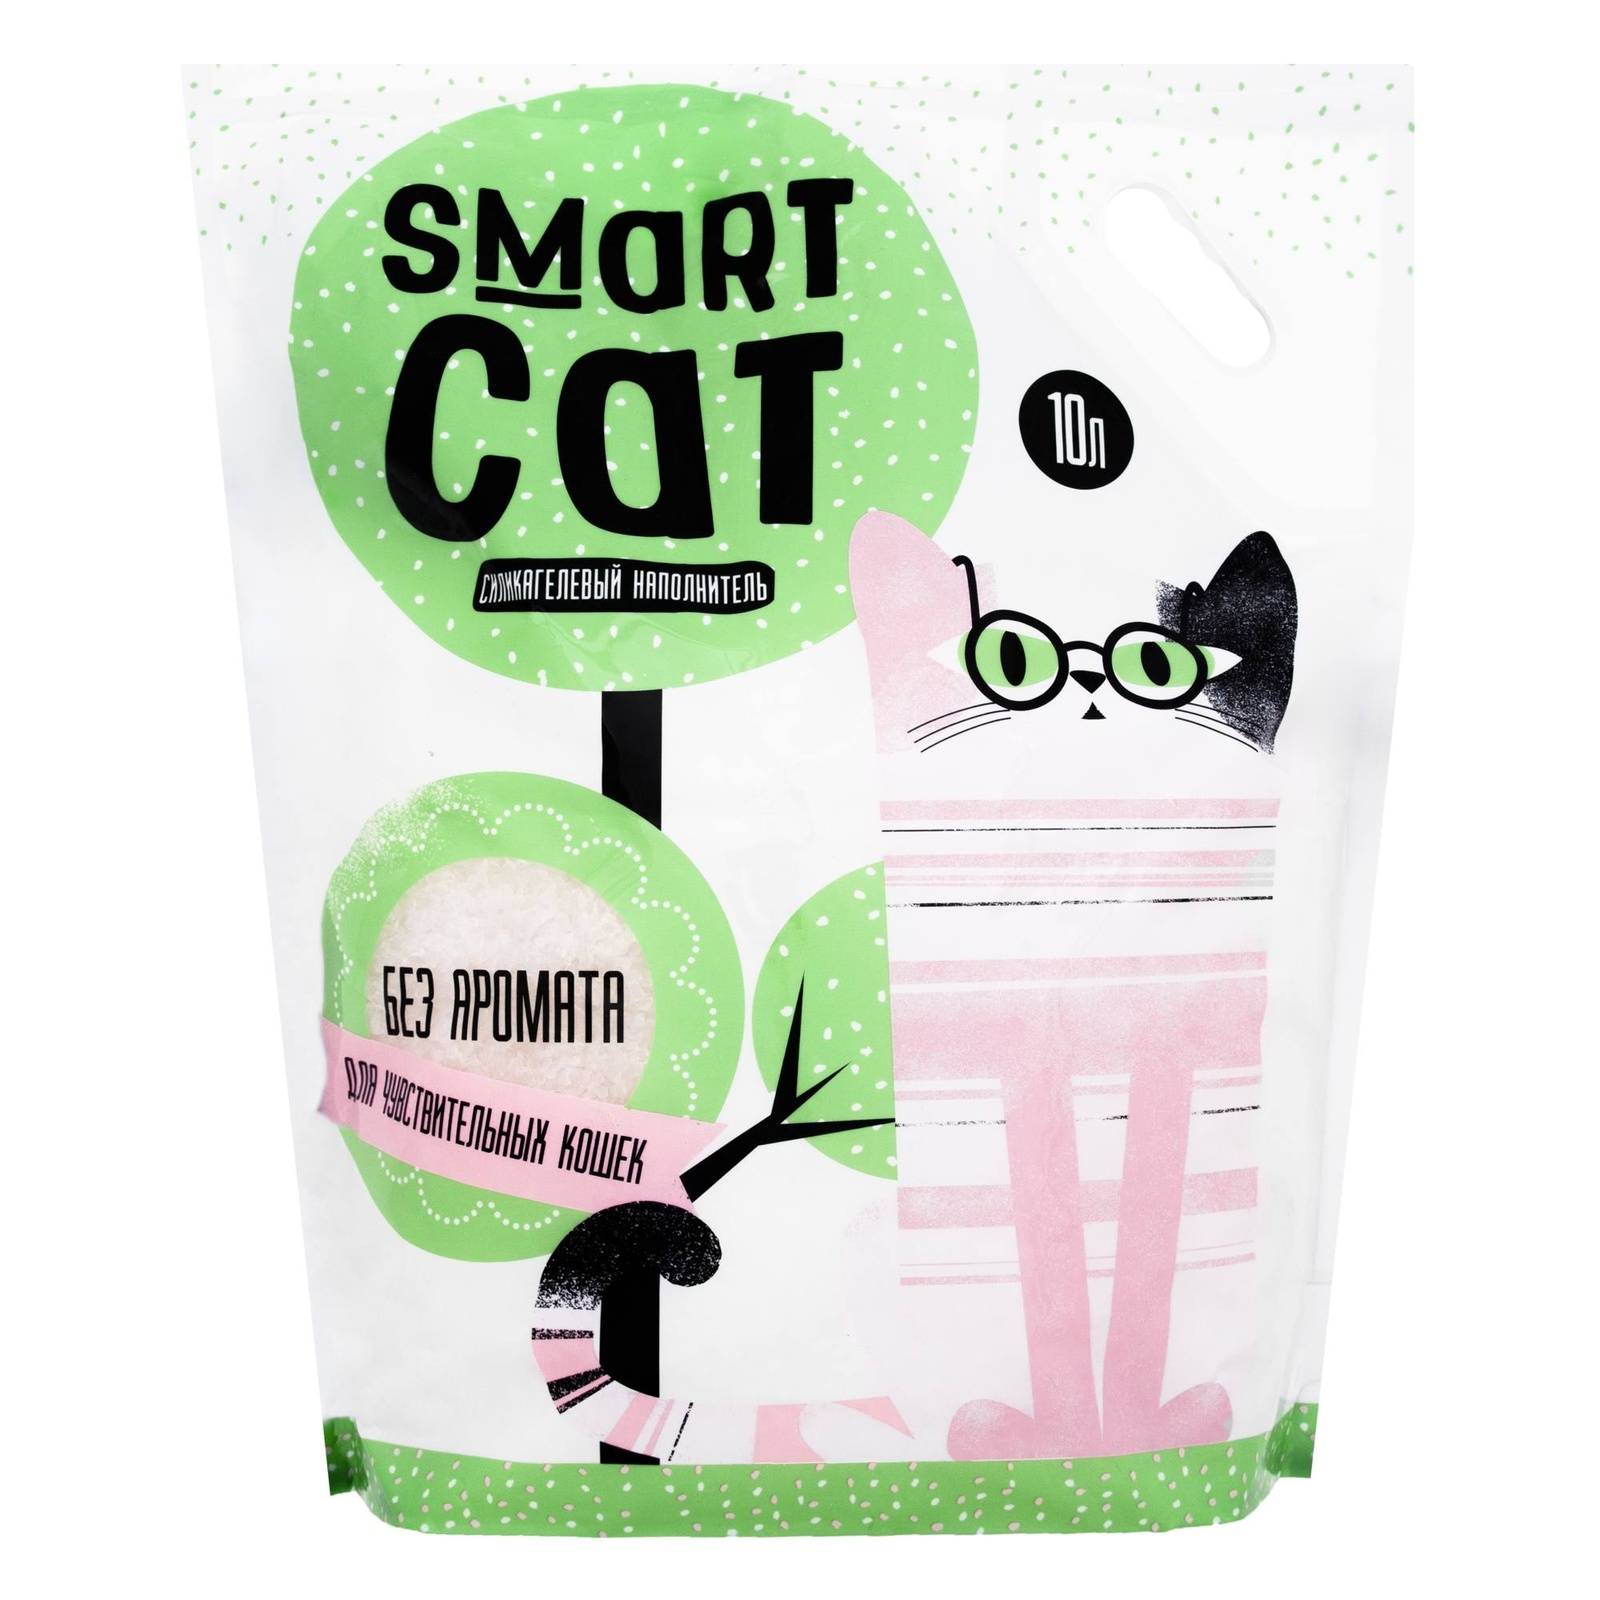 Силикагелевый наполнитель для чувствительных кошек, без аромата (4,37 кг) Smart Cat наполнитель Силикагелевый наполнитель для чувствительных кошек, без аромата (4,37 кг) - фото 3